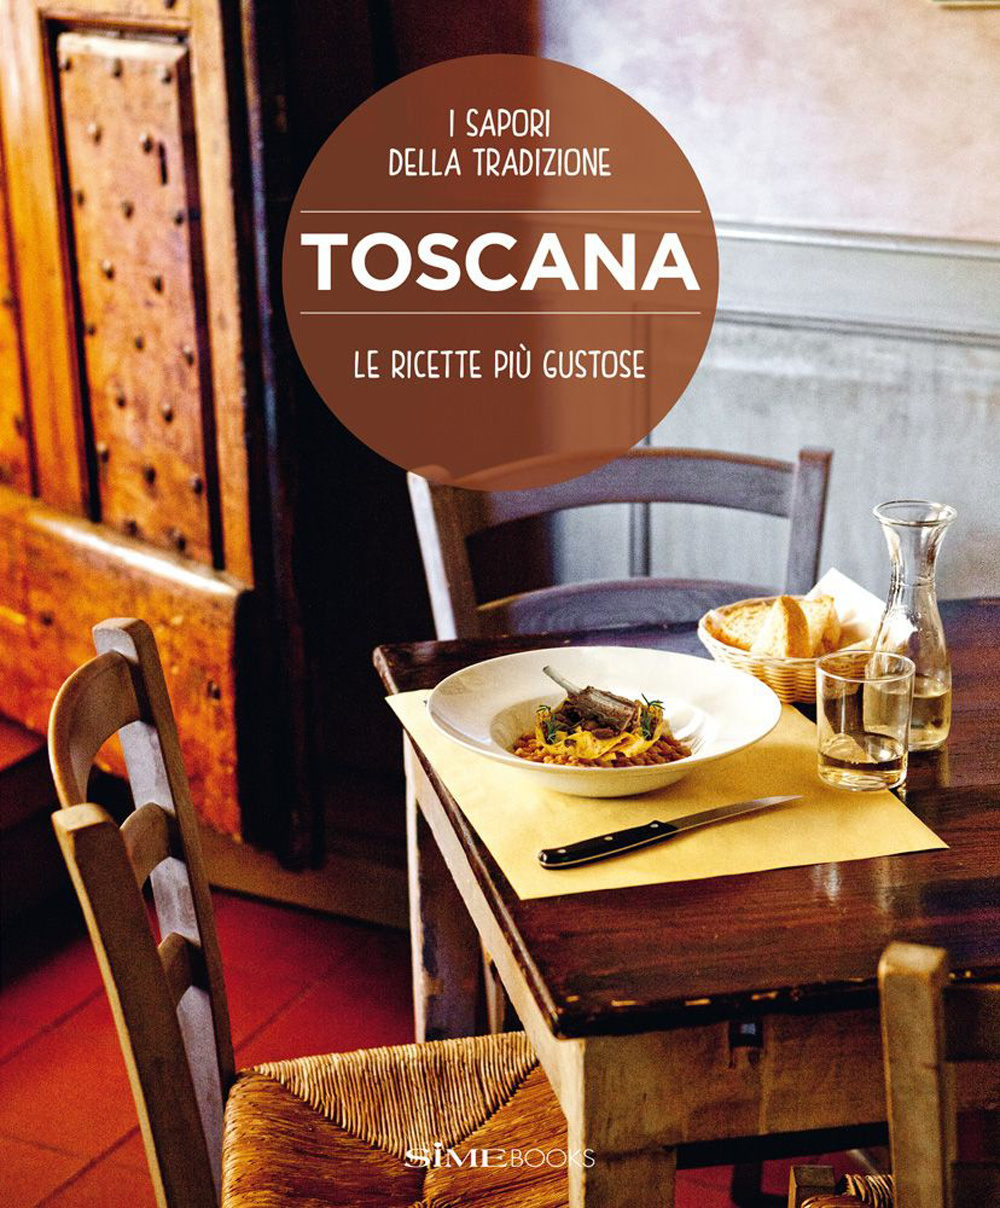 Toscana. Le ricette più gustose. I sapori della tradizione